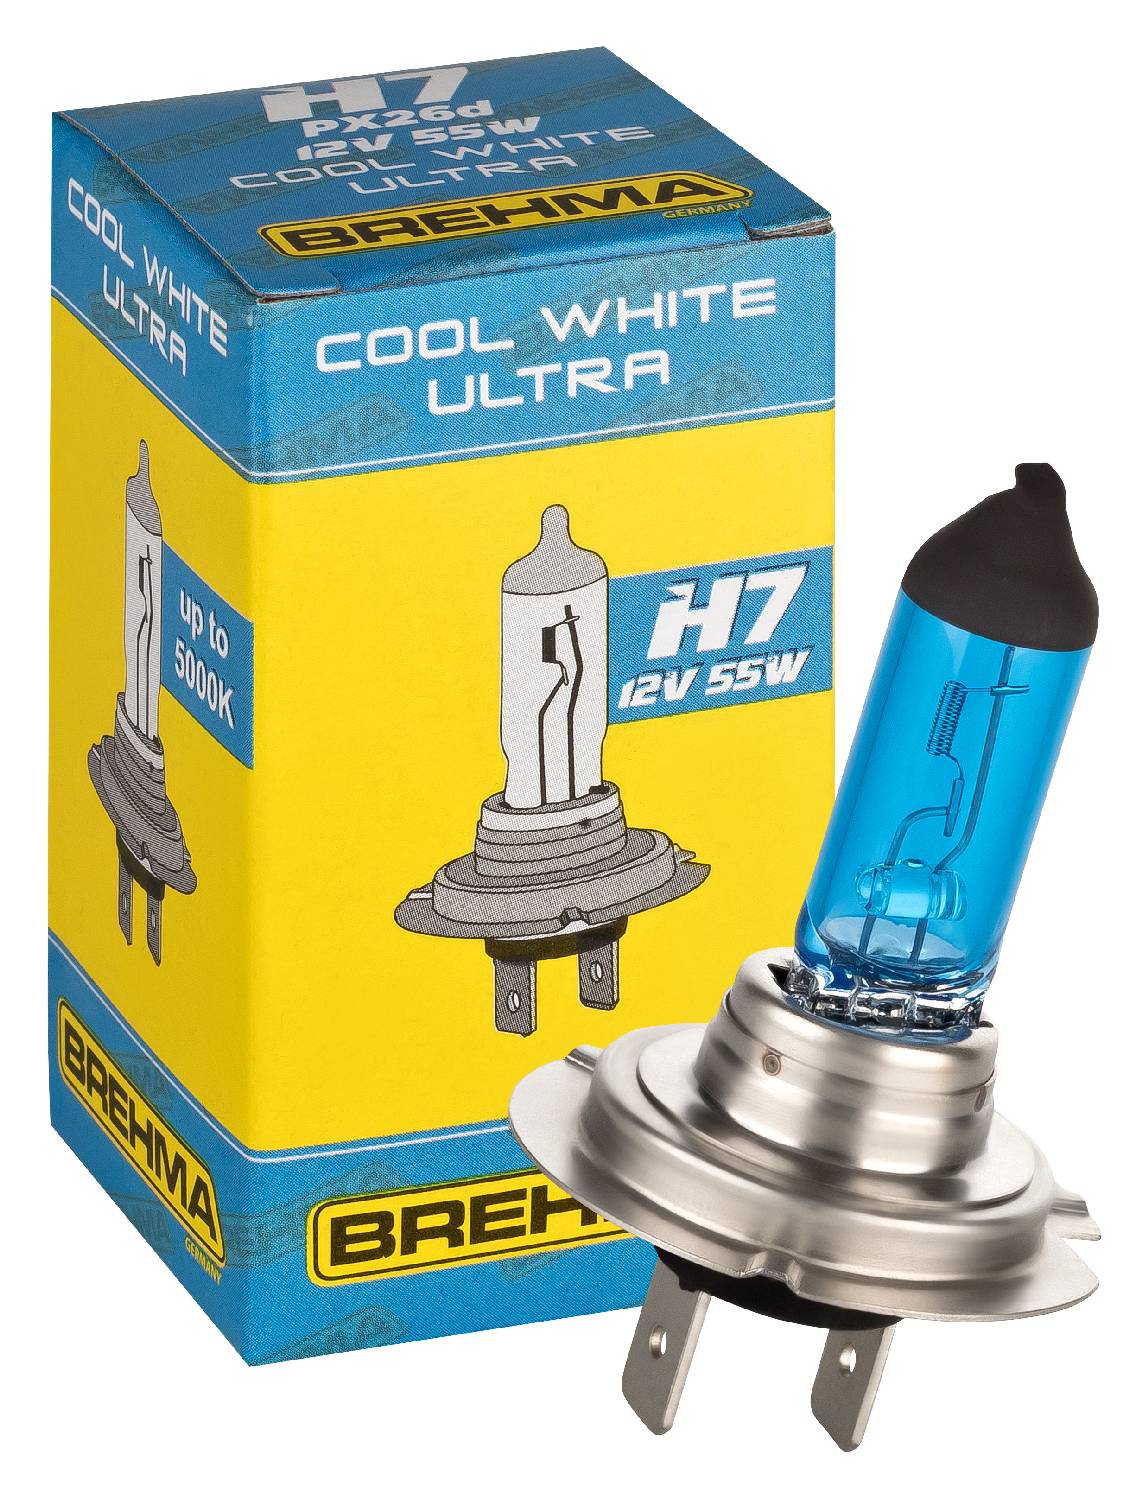 2x BREHMA H7 Xenon Look Optik Birnen Lampen 5000K Super White weiss  Glühlampen